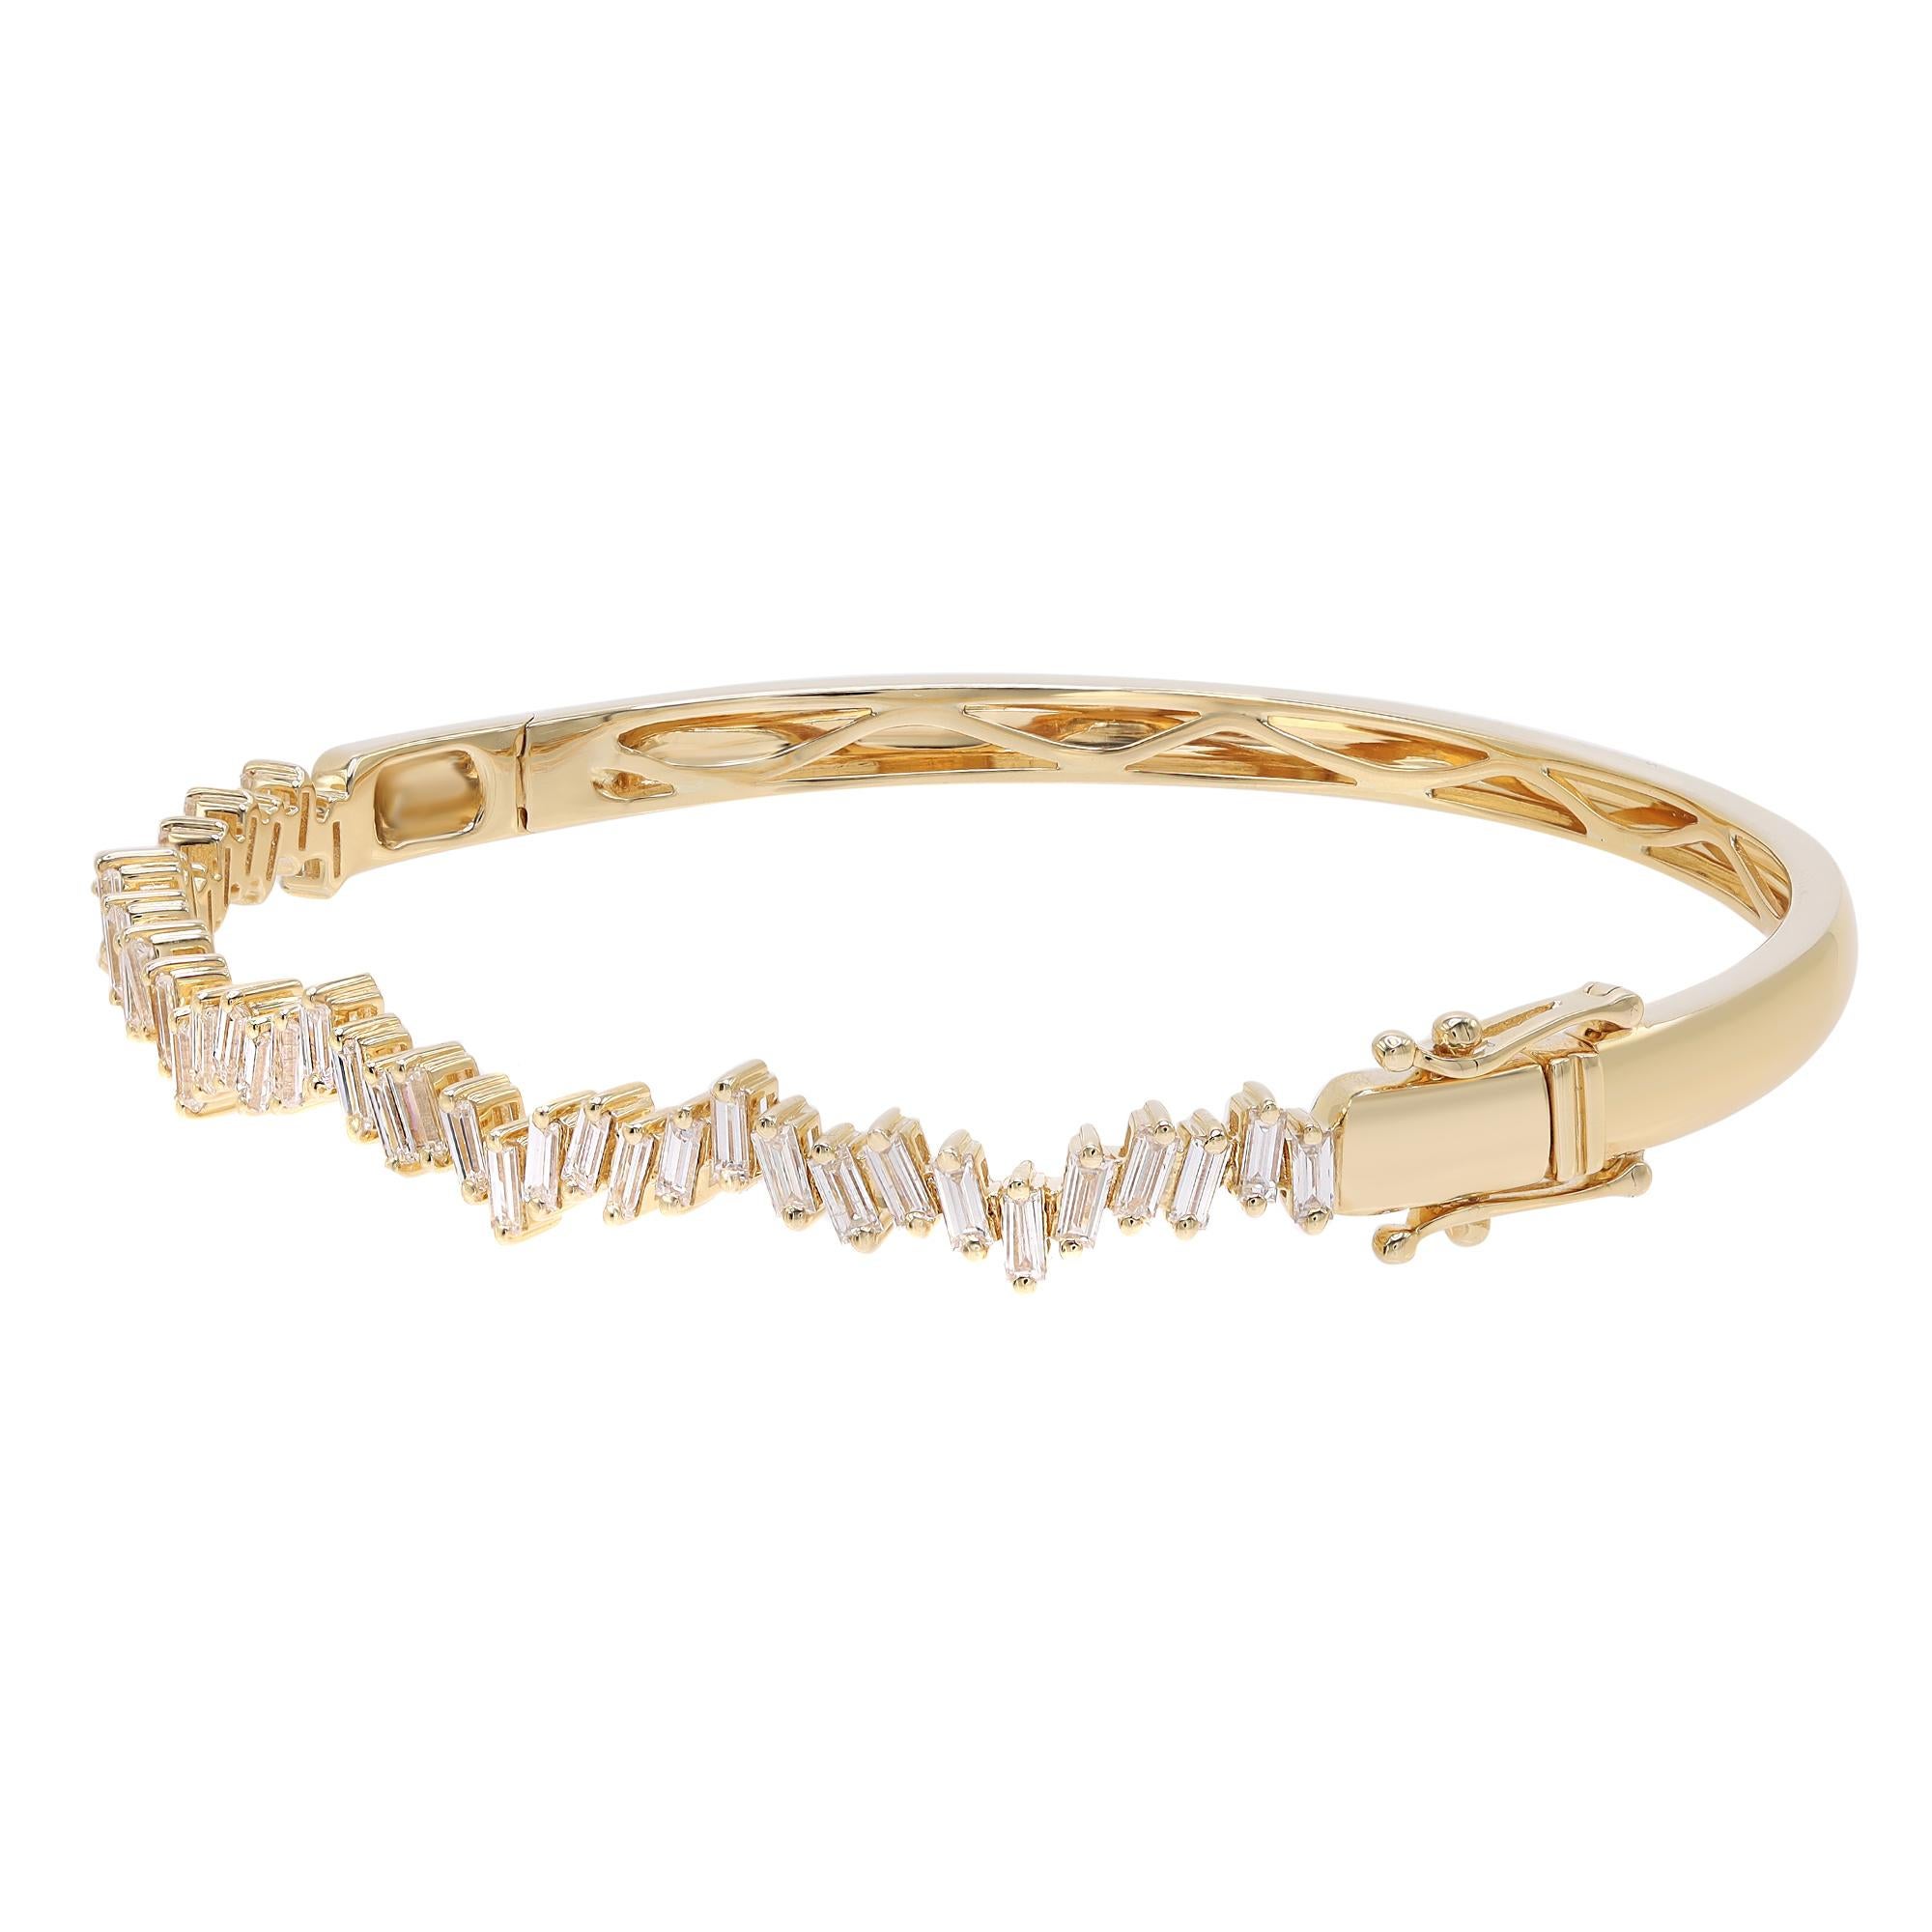 Un look classique à l'élégance facile, ce bracelet bangle en diamants respire la sophistication. Fabriqué en or jaune 18k. Ce bracelet présente des diamants taille baguette incrustés à mi-hauteur du bracelet dans un motif en zigzag en sertissage à